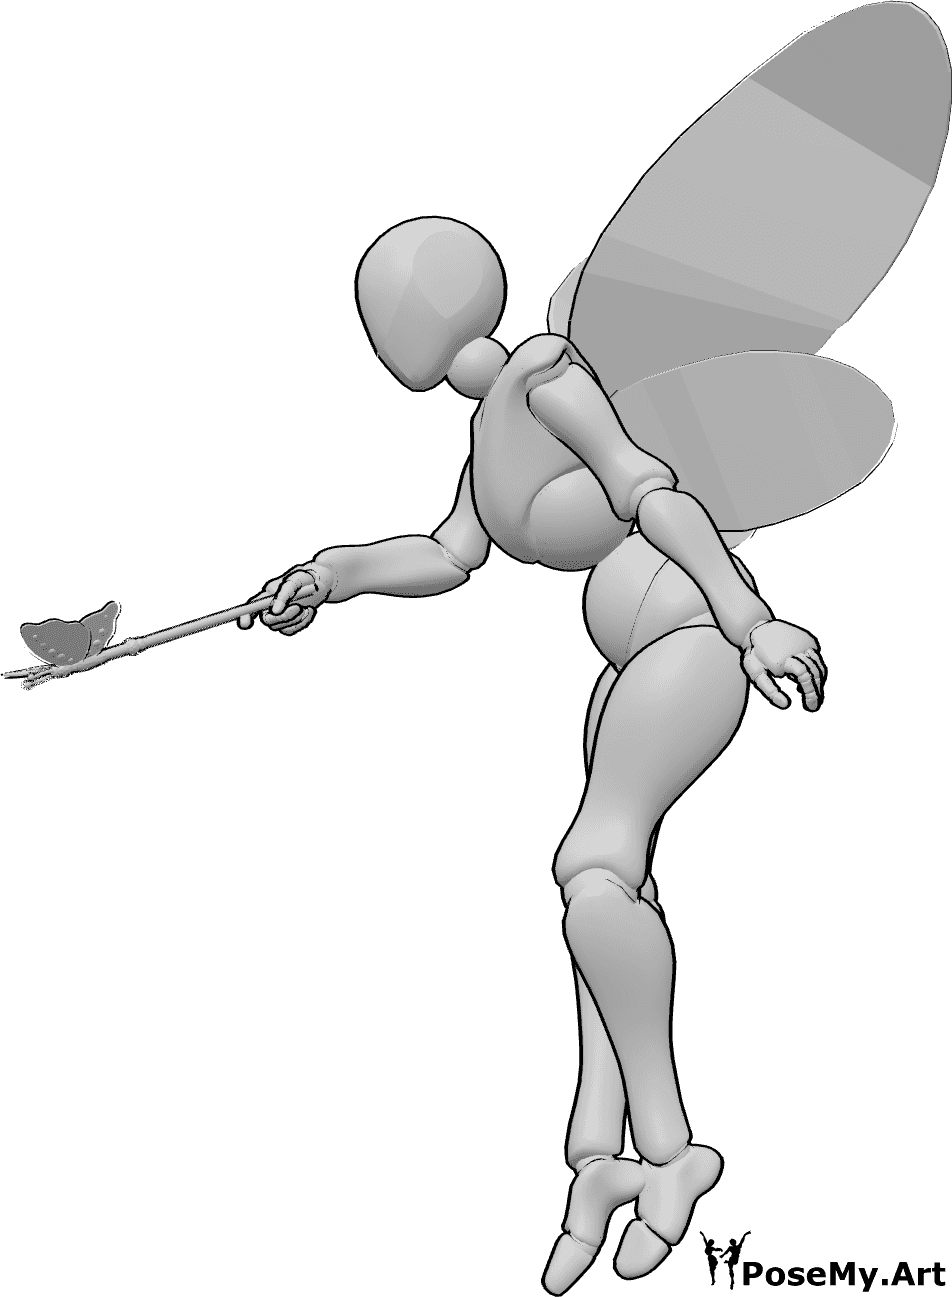 Posen-Referenz- Zauberspruch Feenpose - Weibliche Fee schwebt und bückt sich, um mit ihrem Feenstab einen Zauber zu sprechen